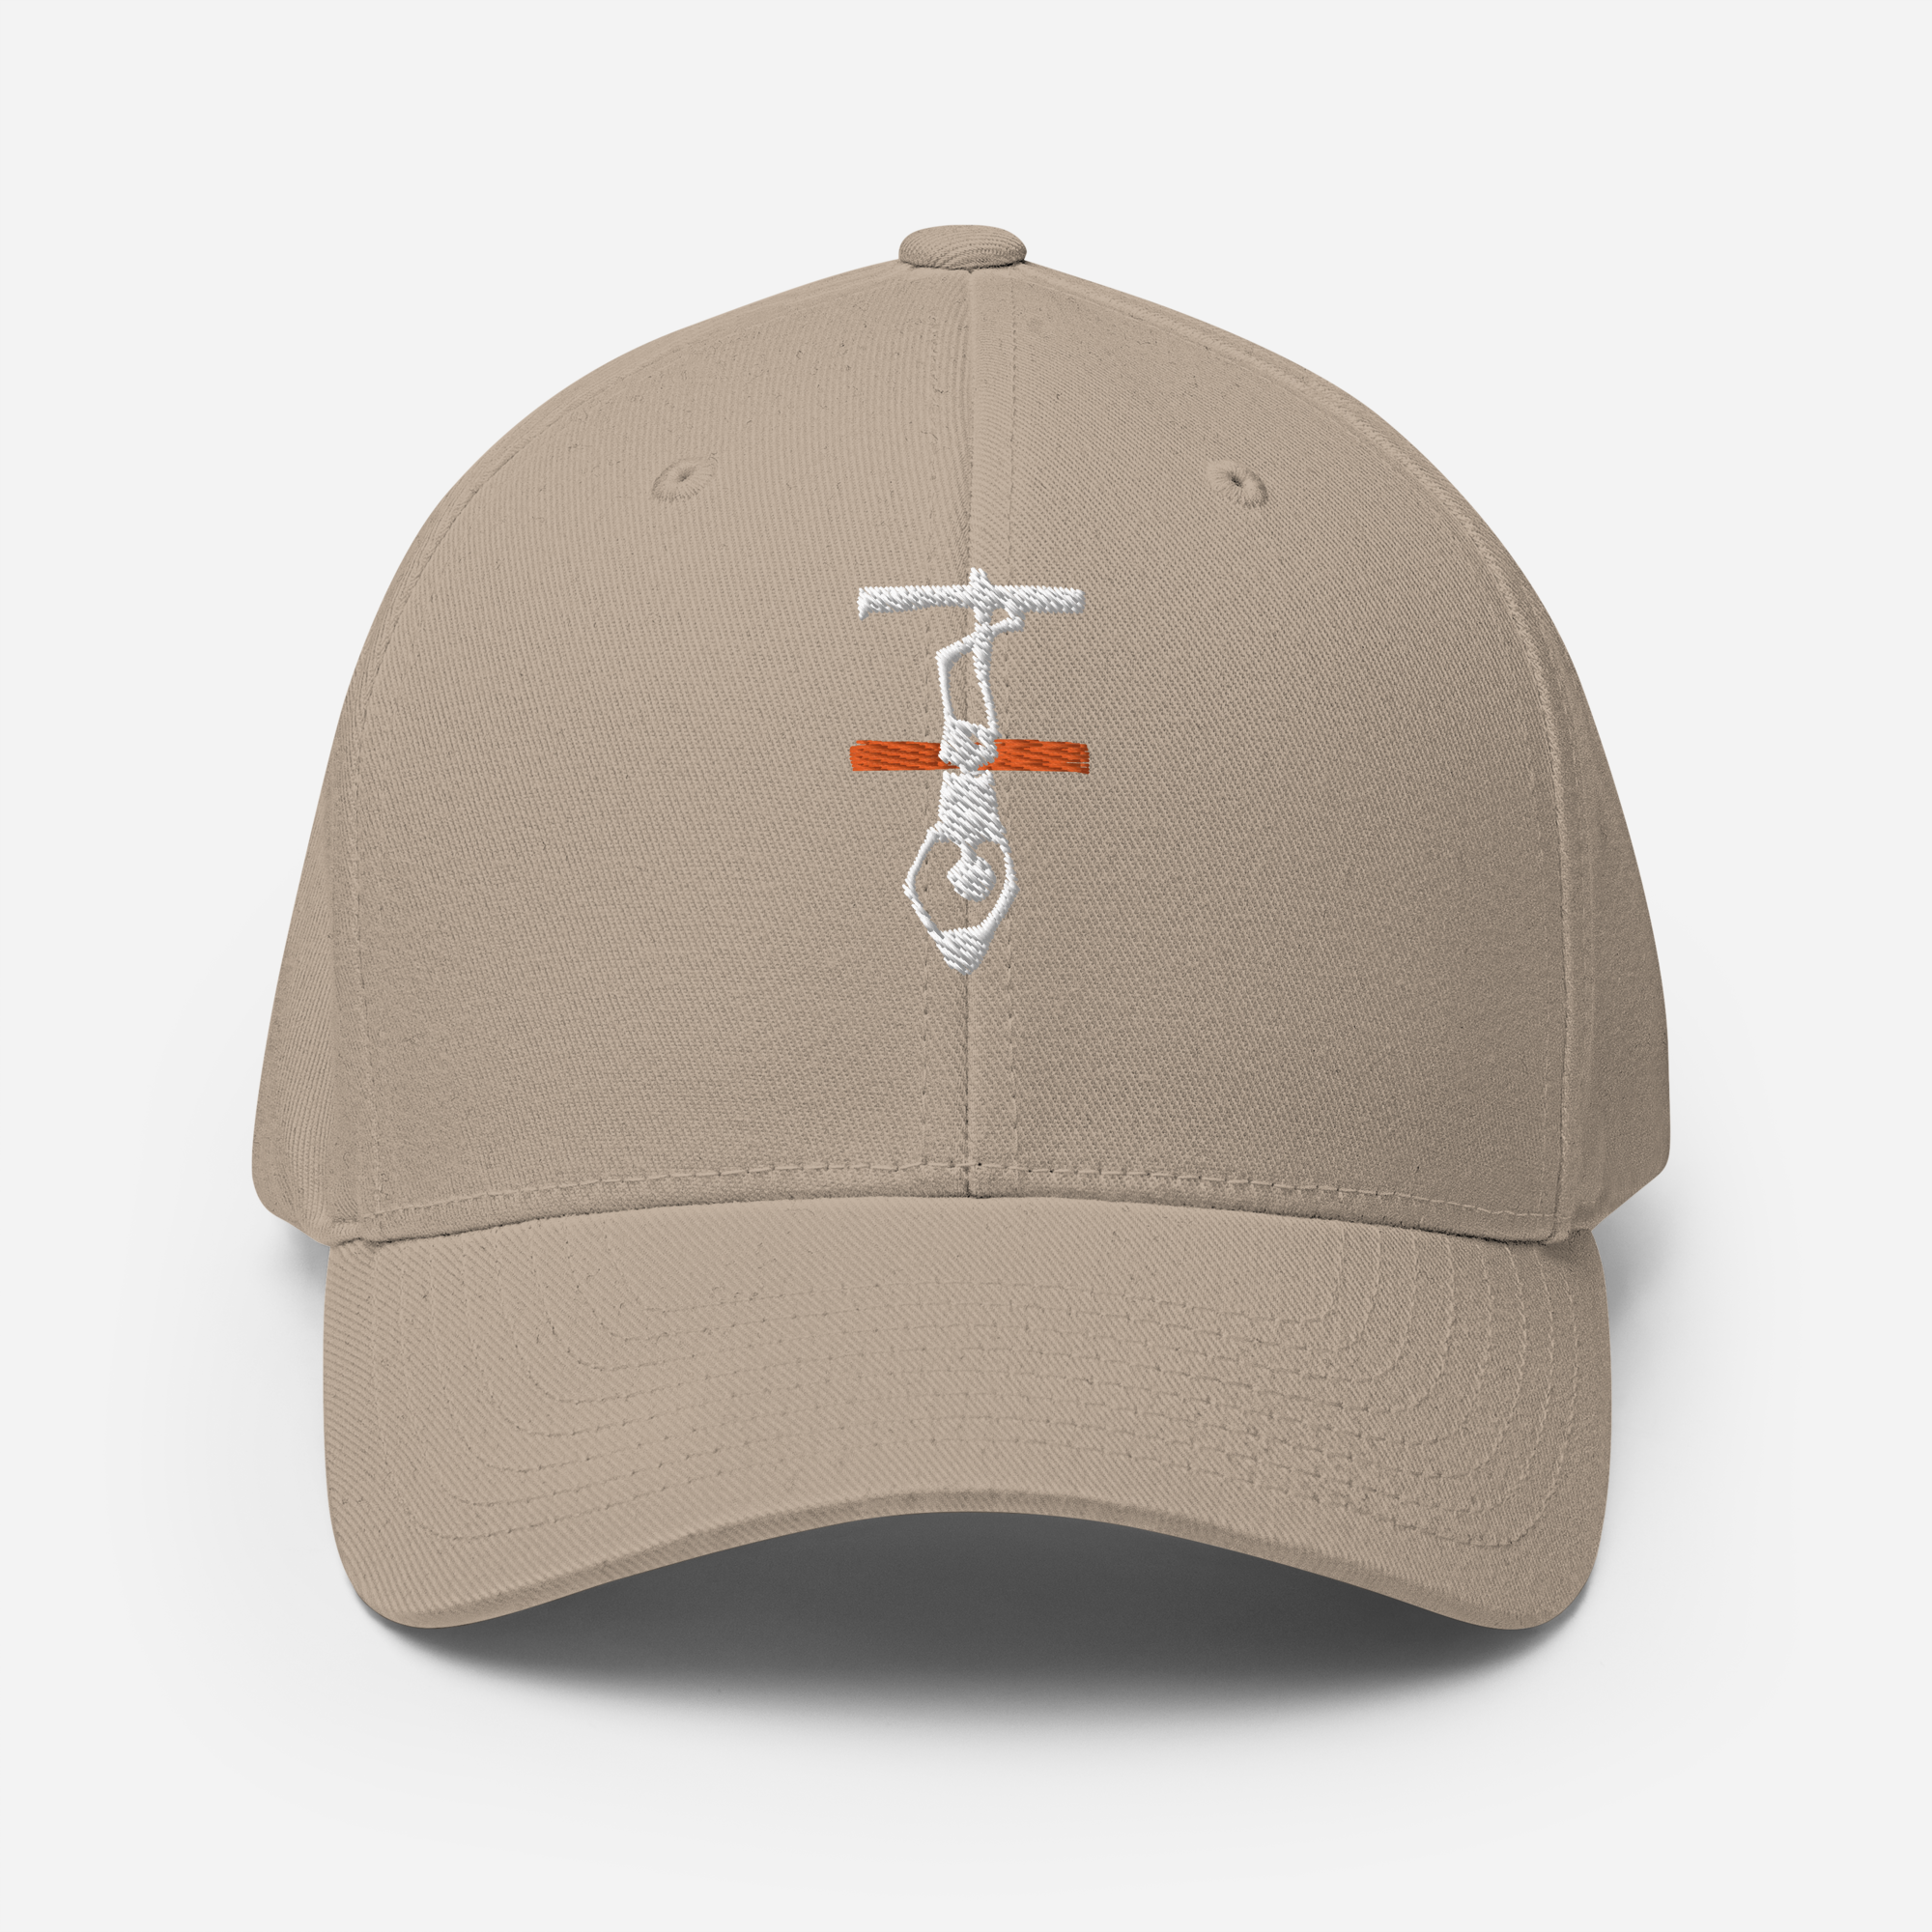 Thin Orange Line Hanged Man Structured Twill Cap - White Logo